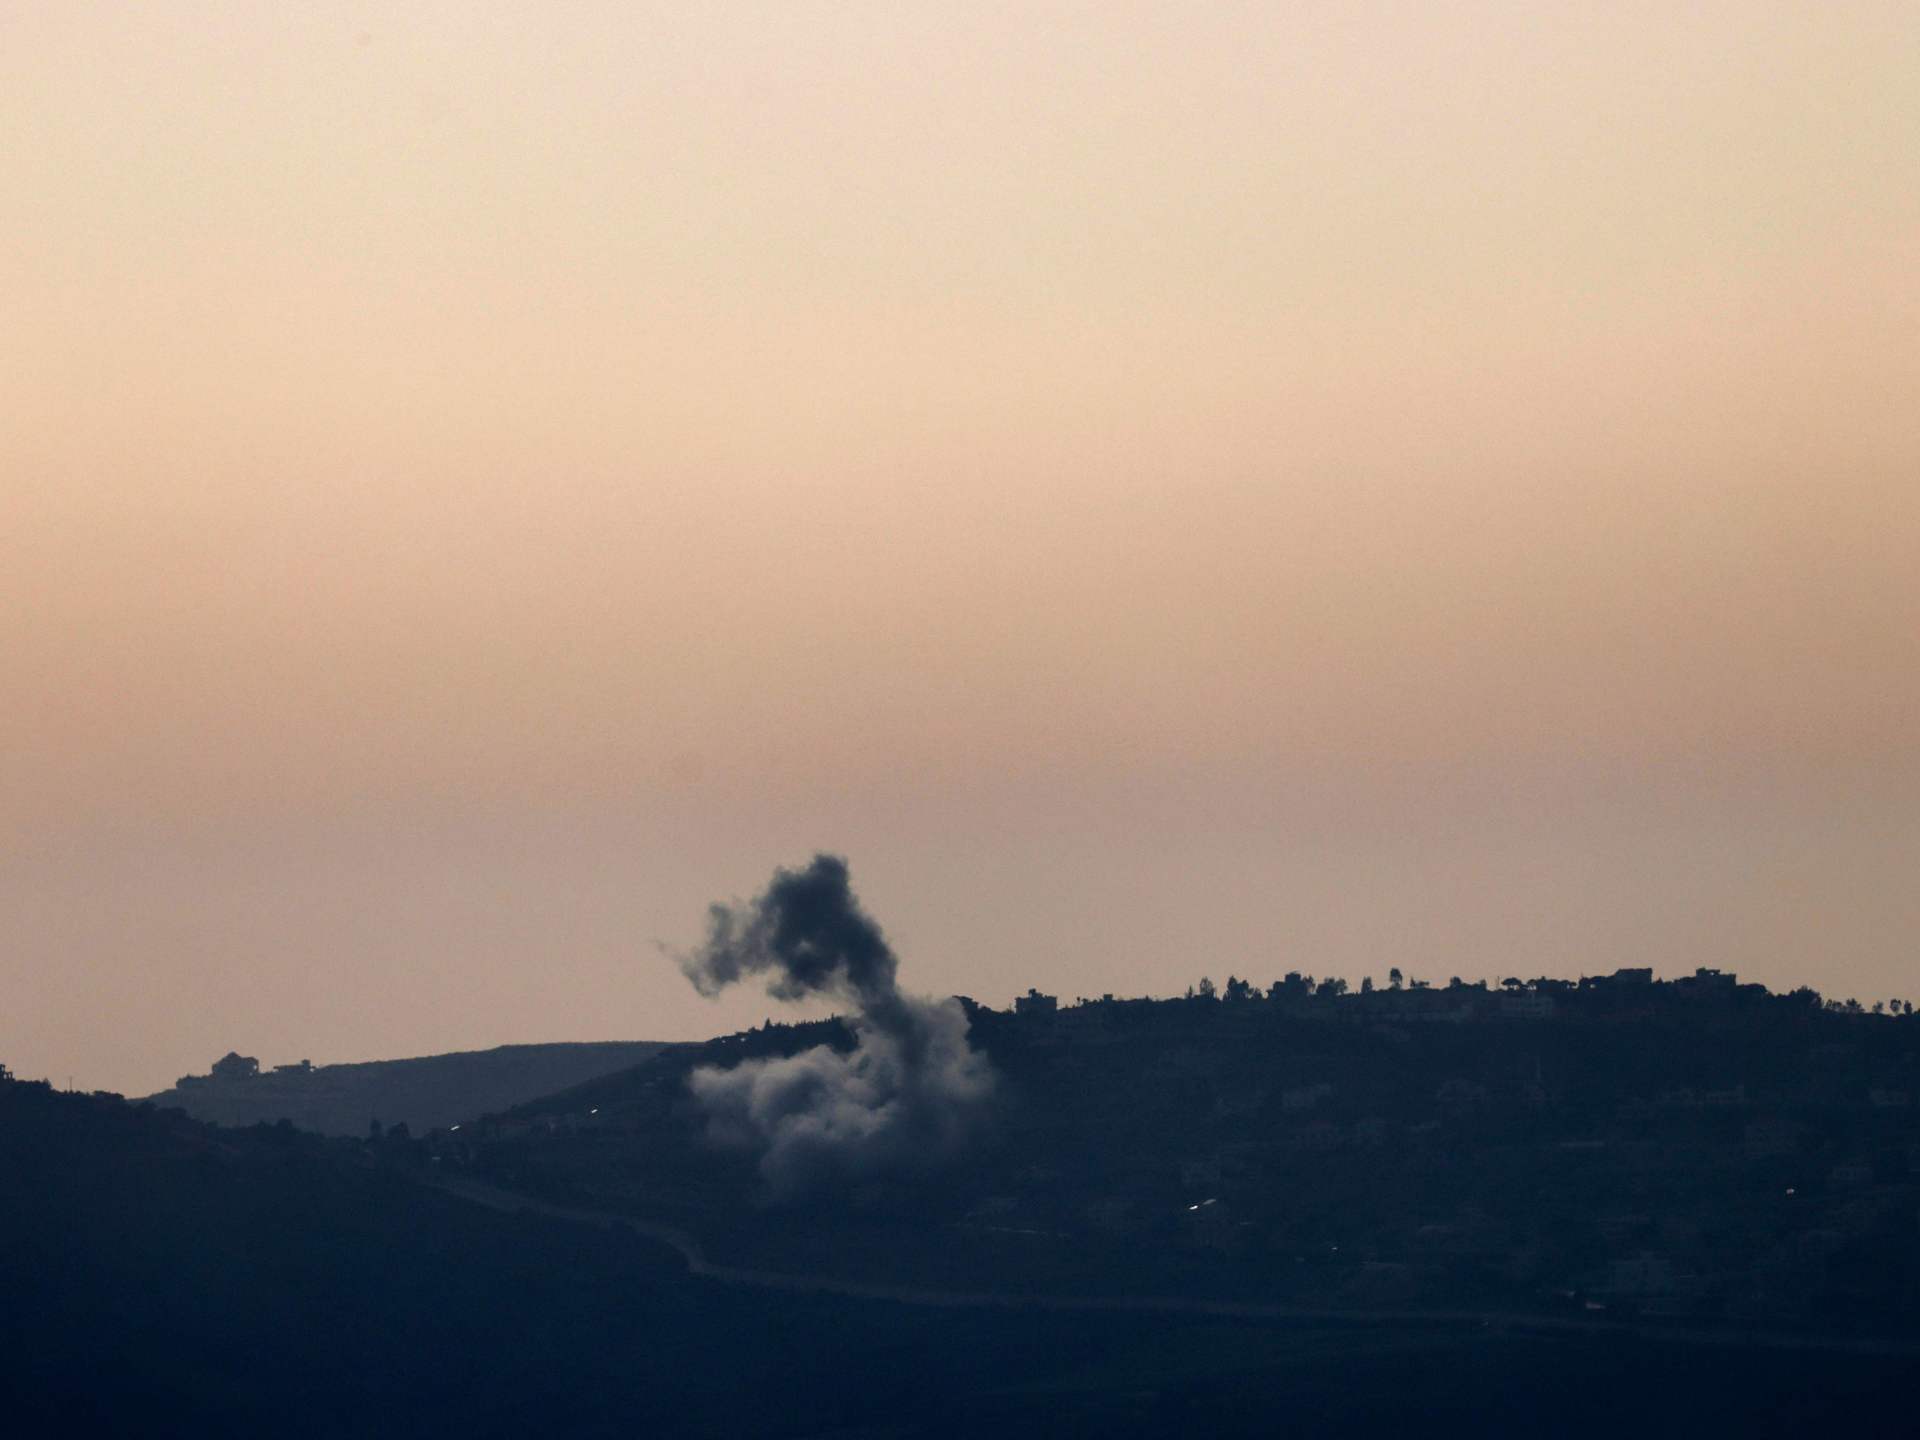 صواريخ من لبنان باتجاه الجليل الأعلى وقصف إسرائيلي على الجنوب | أخبار – البوكس نيوز